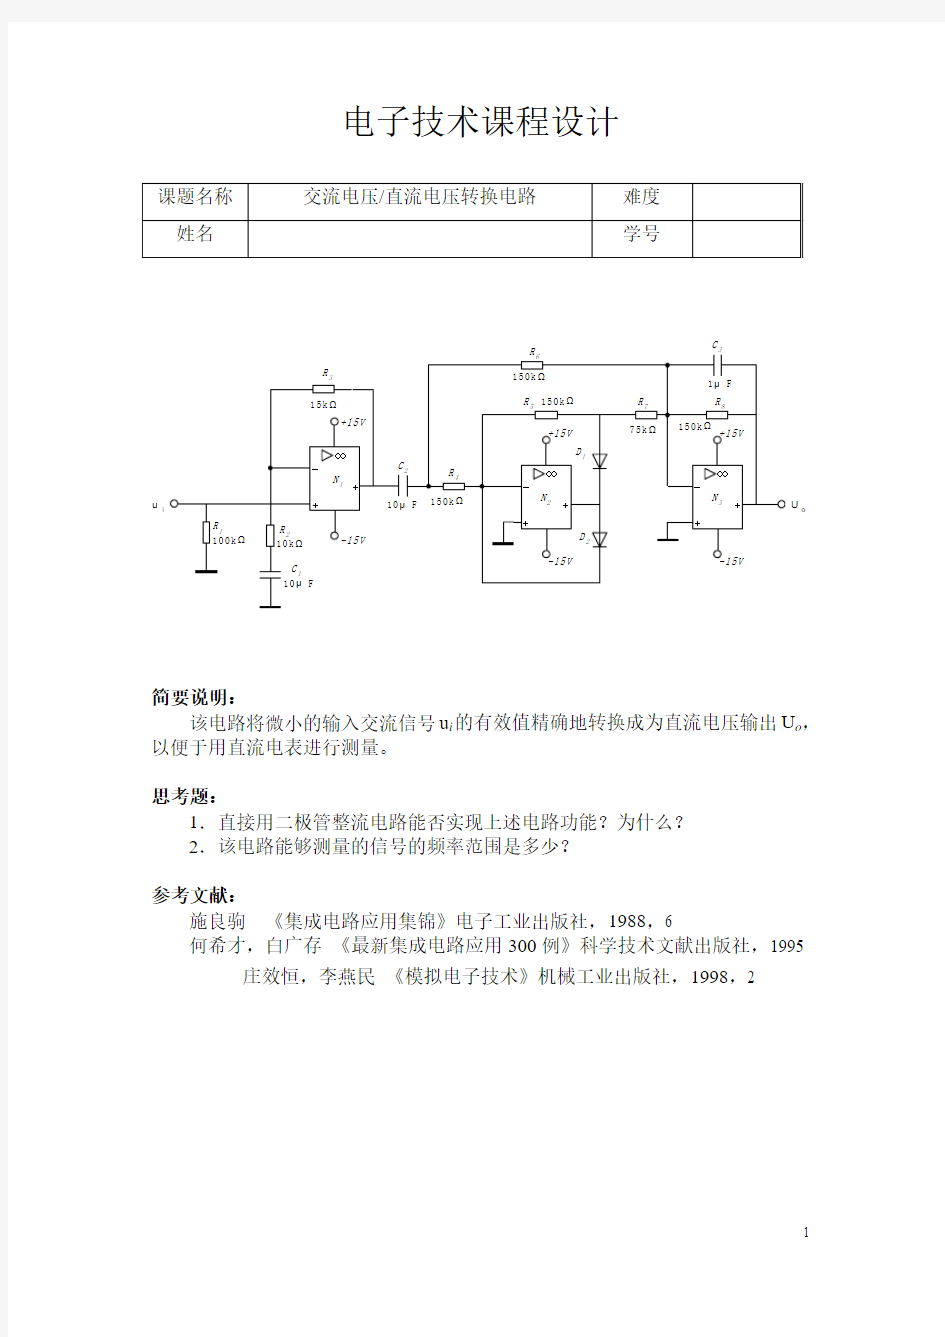 交流电压_直流电压转换电路(课程设计)